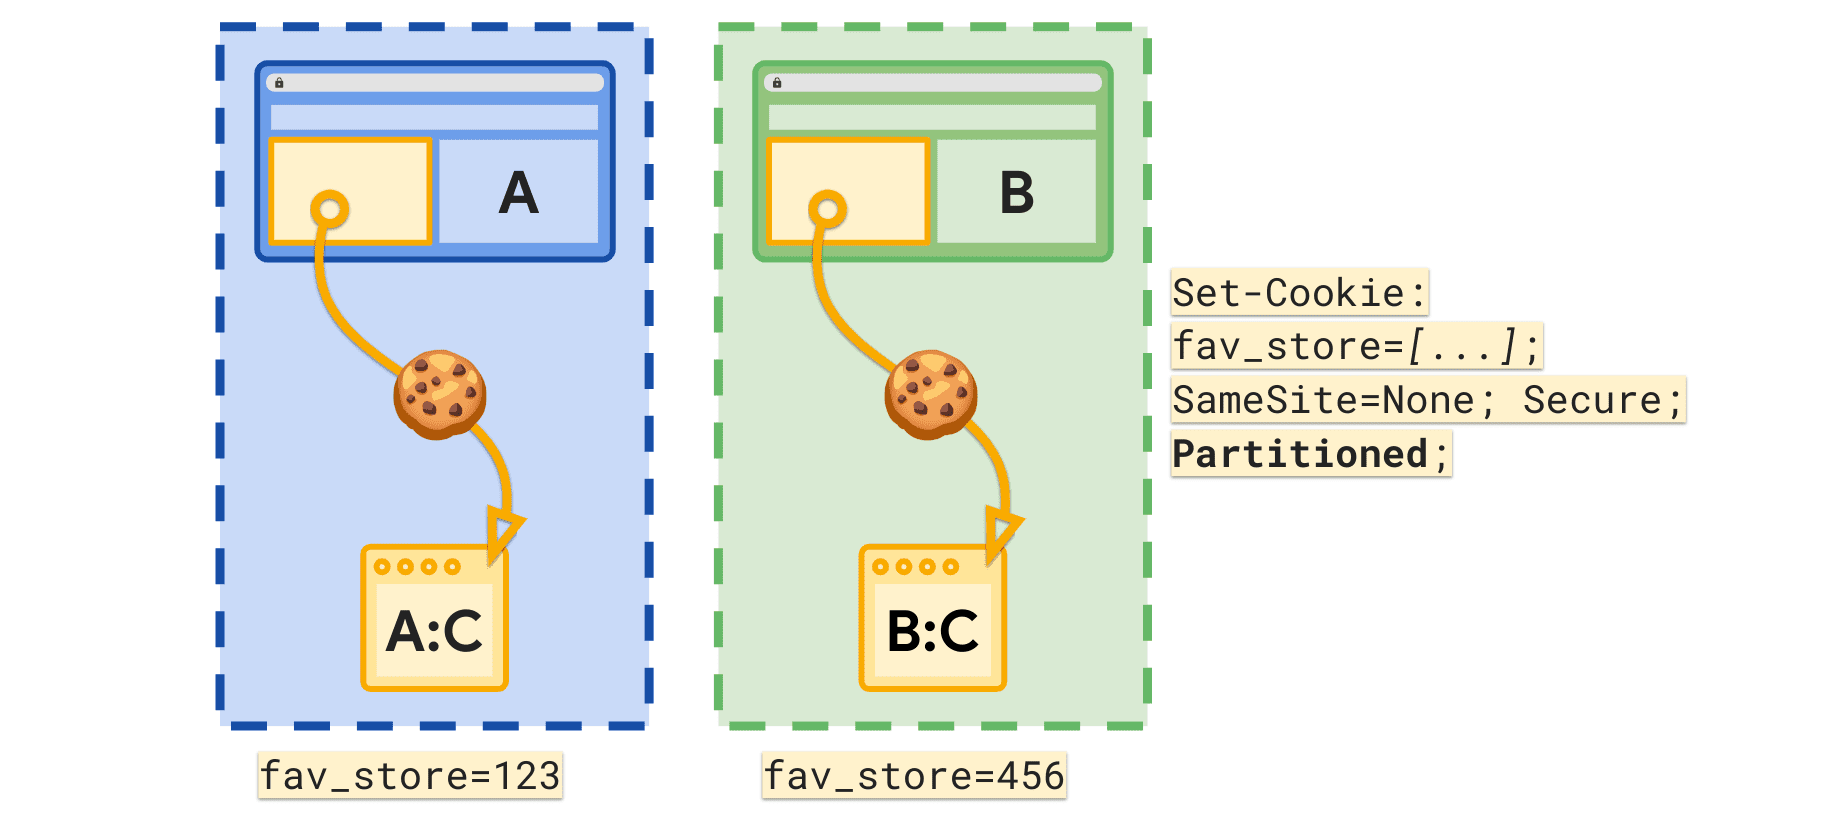 L&#39;attributo Partizionato consente di impostare un cookie fav_store separato per sito di primo livello.